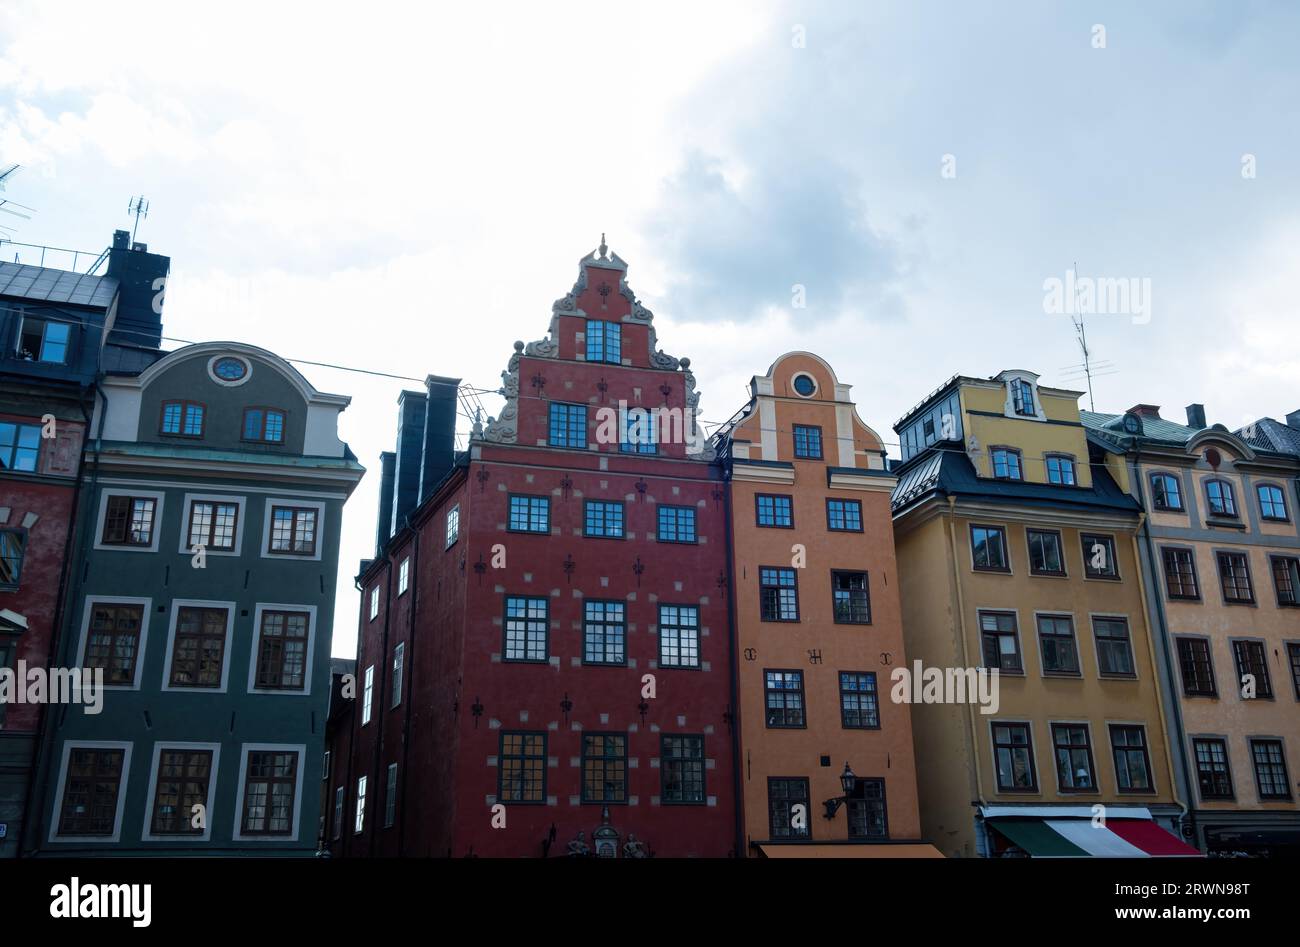 Svezia, imponente e tradizionale edificio colorato presso la Grand Square, Stortorget, la più antica piazza pubblica della città vecchia di Stoccolma Gamla Stan. Parte superiore Foto Stock